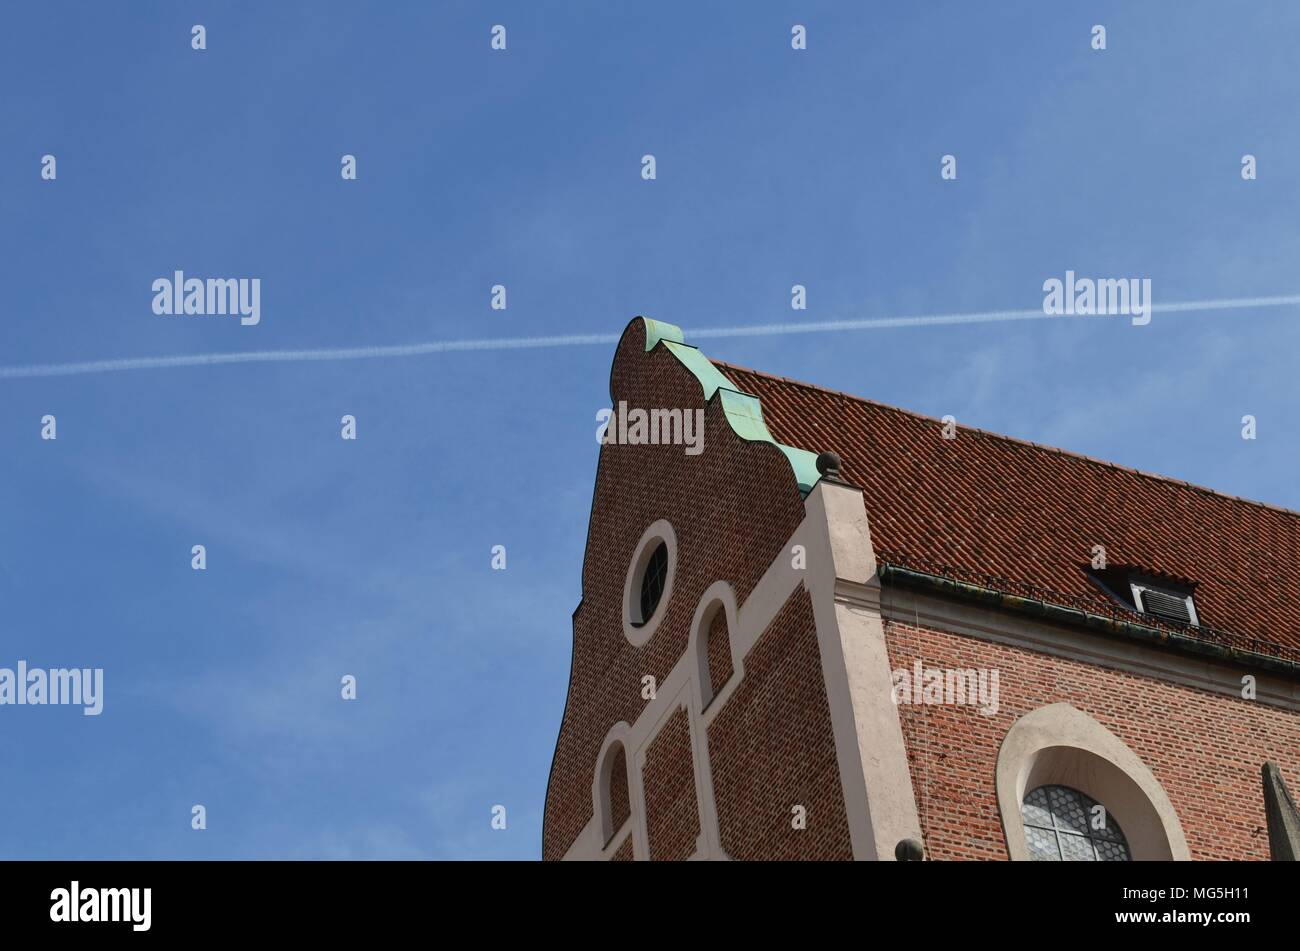 Bâtiment historique faite de briques rouges et d'une traînée de condensation d'un avion dans le ciel bleu tourné à Munich en Allemagne Banque D'Images